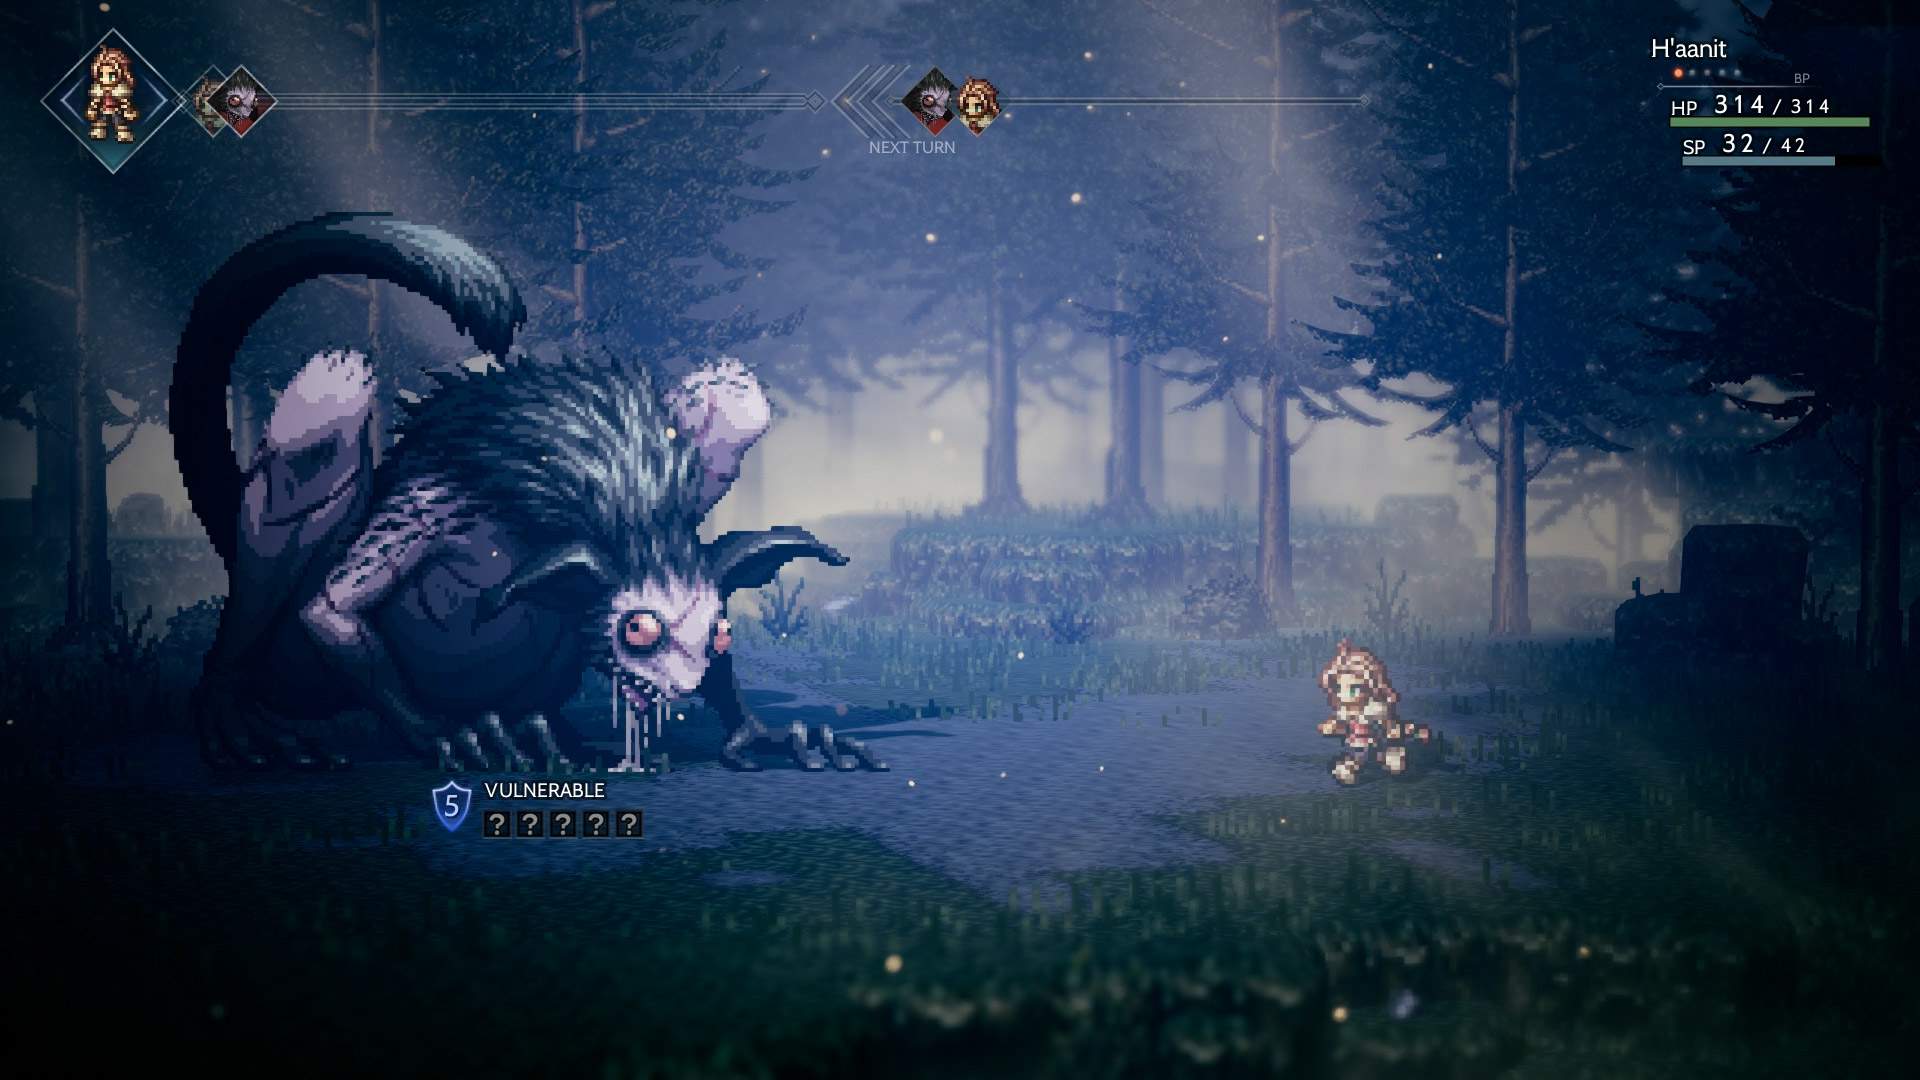 Captura de pantalla de una lucha del juego que muestra a H'aanit en un combate por turnos contra un monstruo enorme en un bosque.